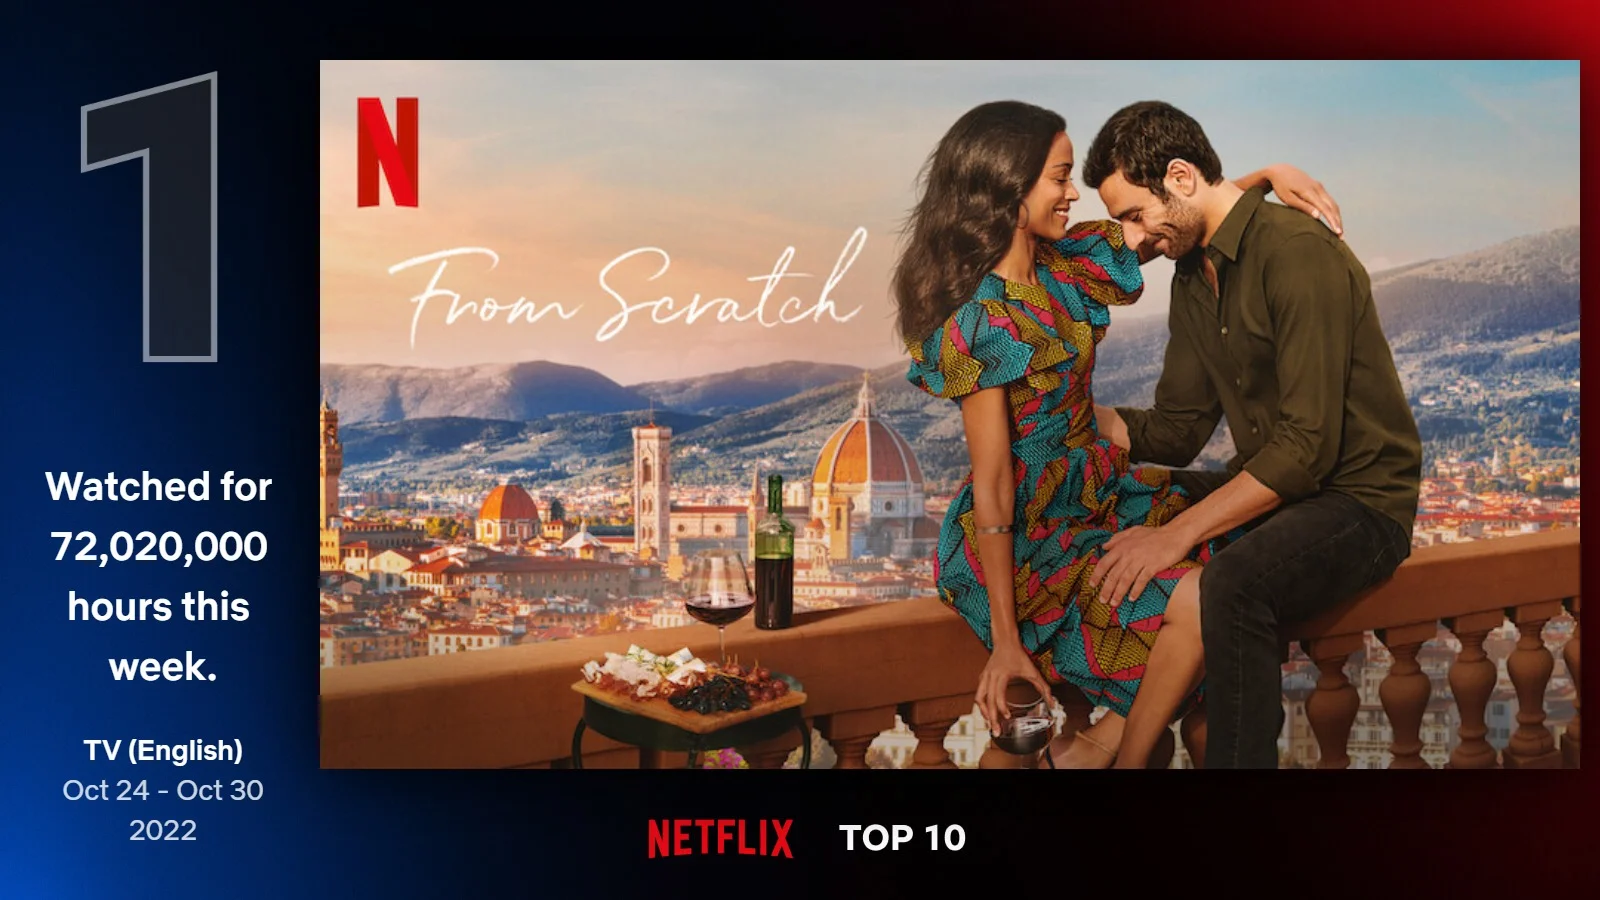 «Вкус к жизни» с Зои Салданой обошёл «Наблюдателя» Мёрфи и возглавил топ-10 Netflix - фото 1